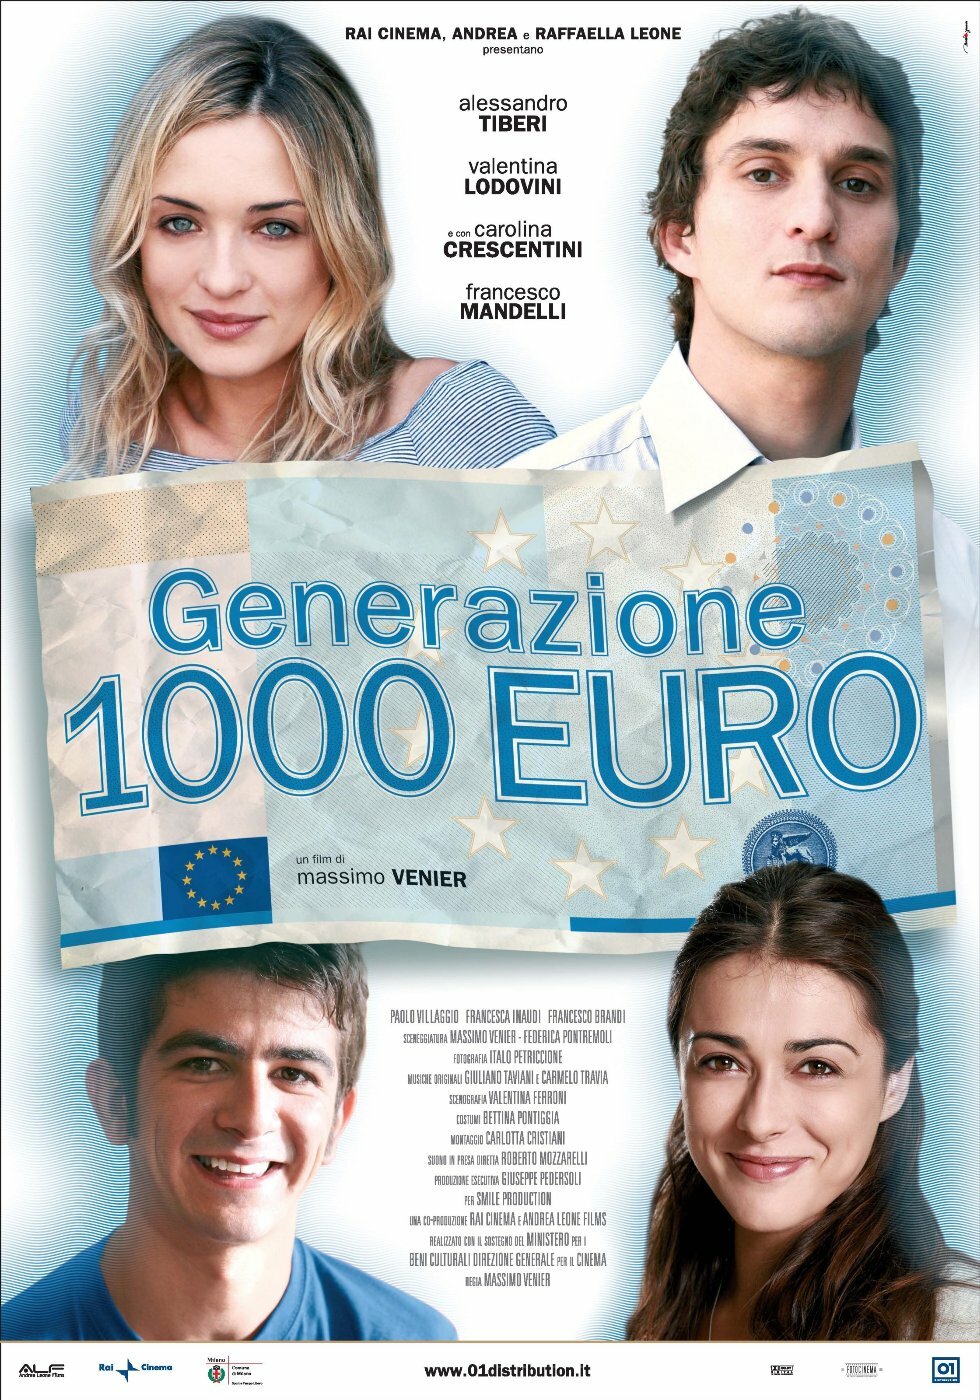 Смотреть фильм Поколение 1000 евро 2009 года онлайн